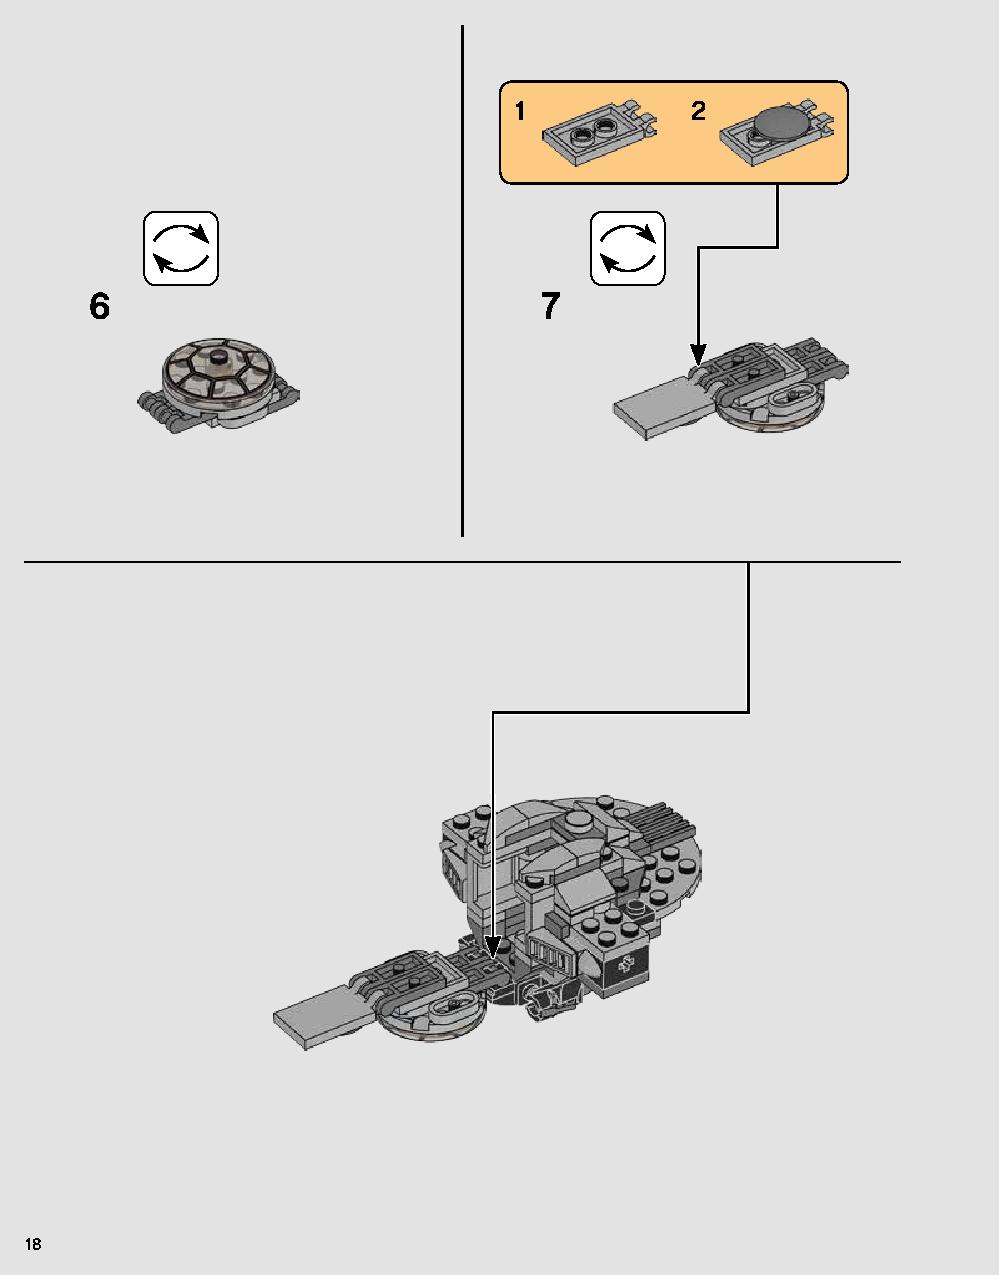 ダース・ベイダーの城 75251 レゴの商品情報 レゴの説明書・組立方法 18 page